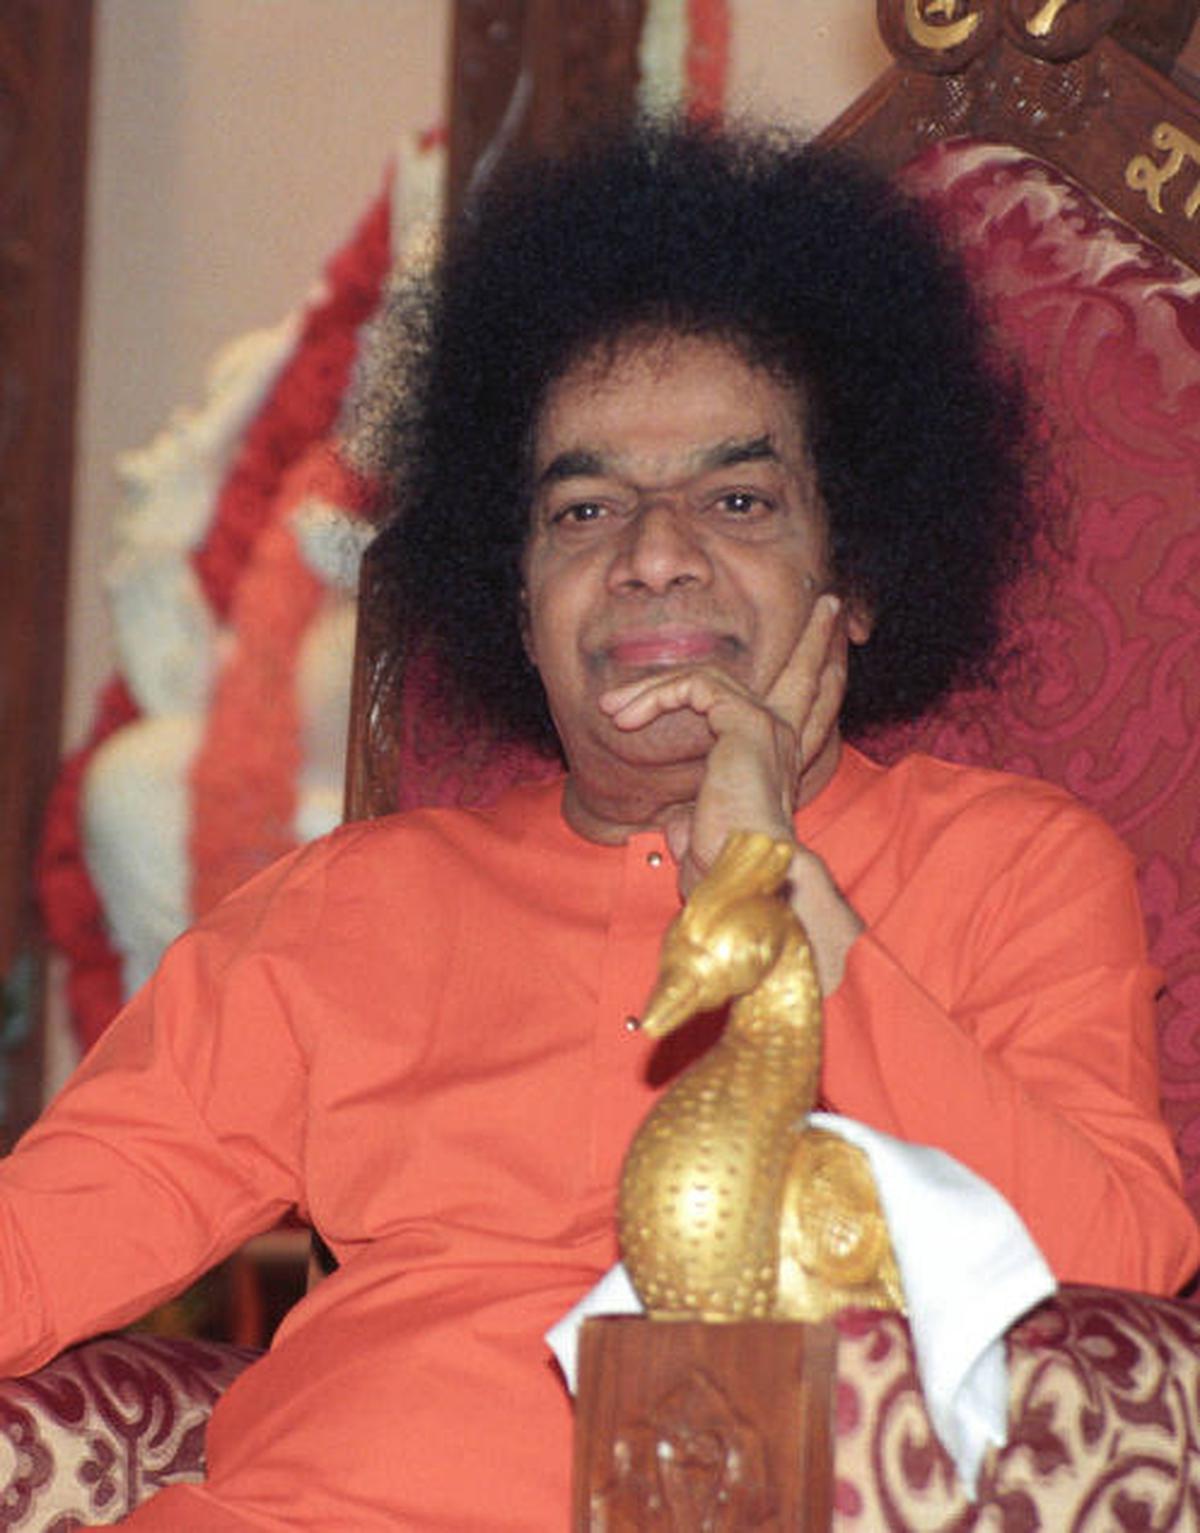 Sathya Sai Baba passes away - The Hindu